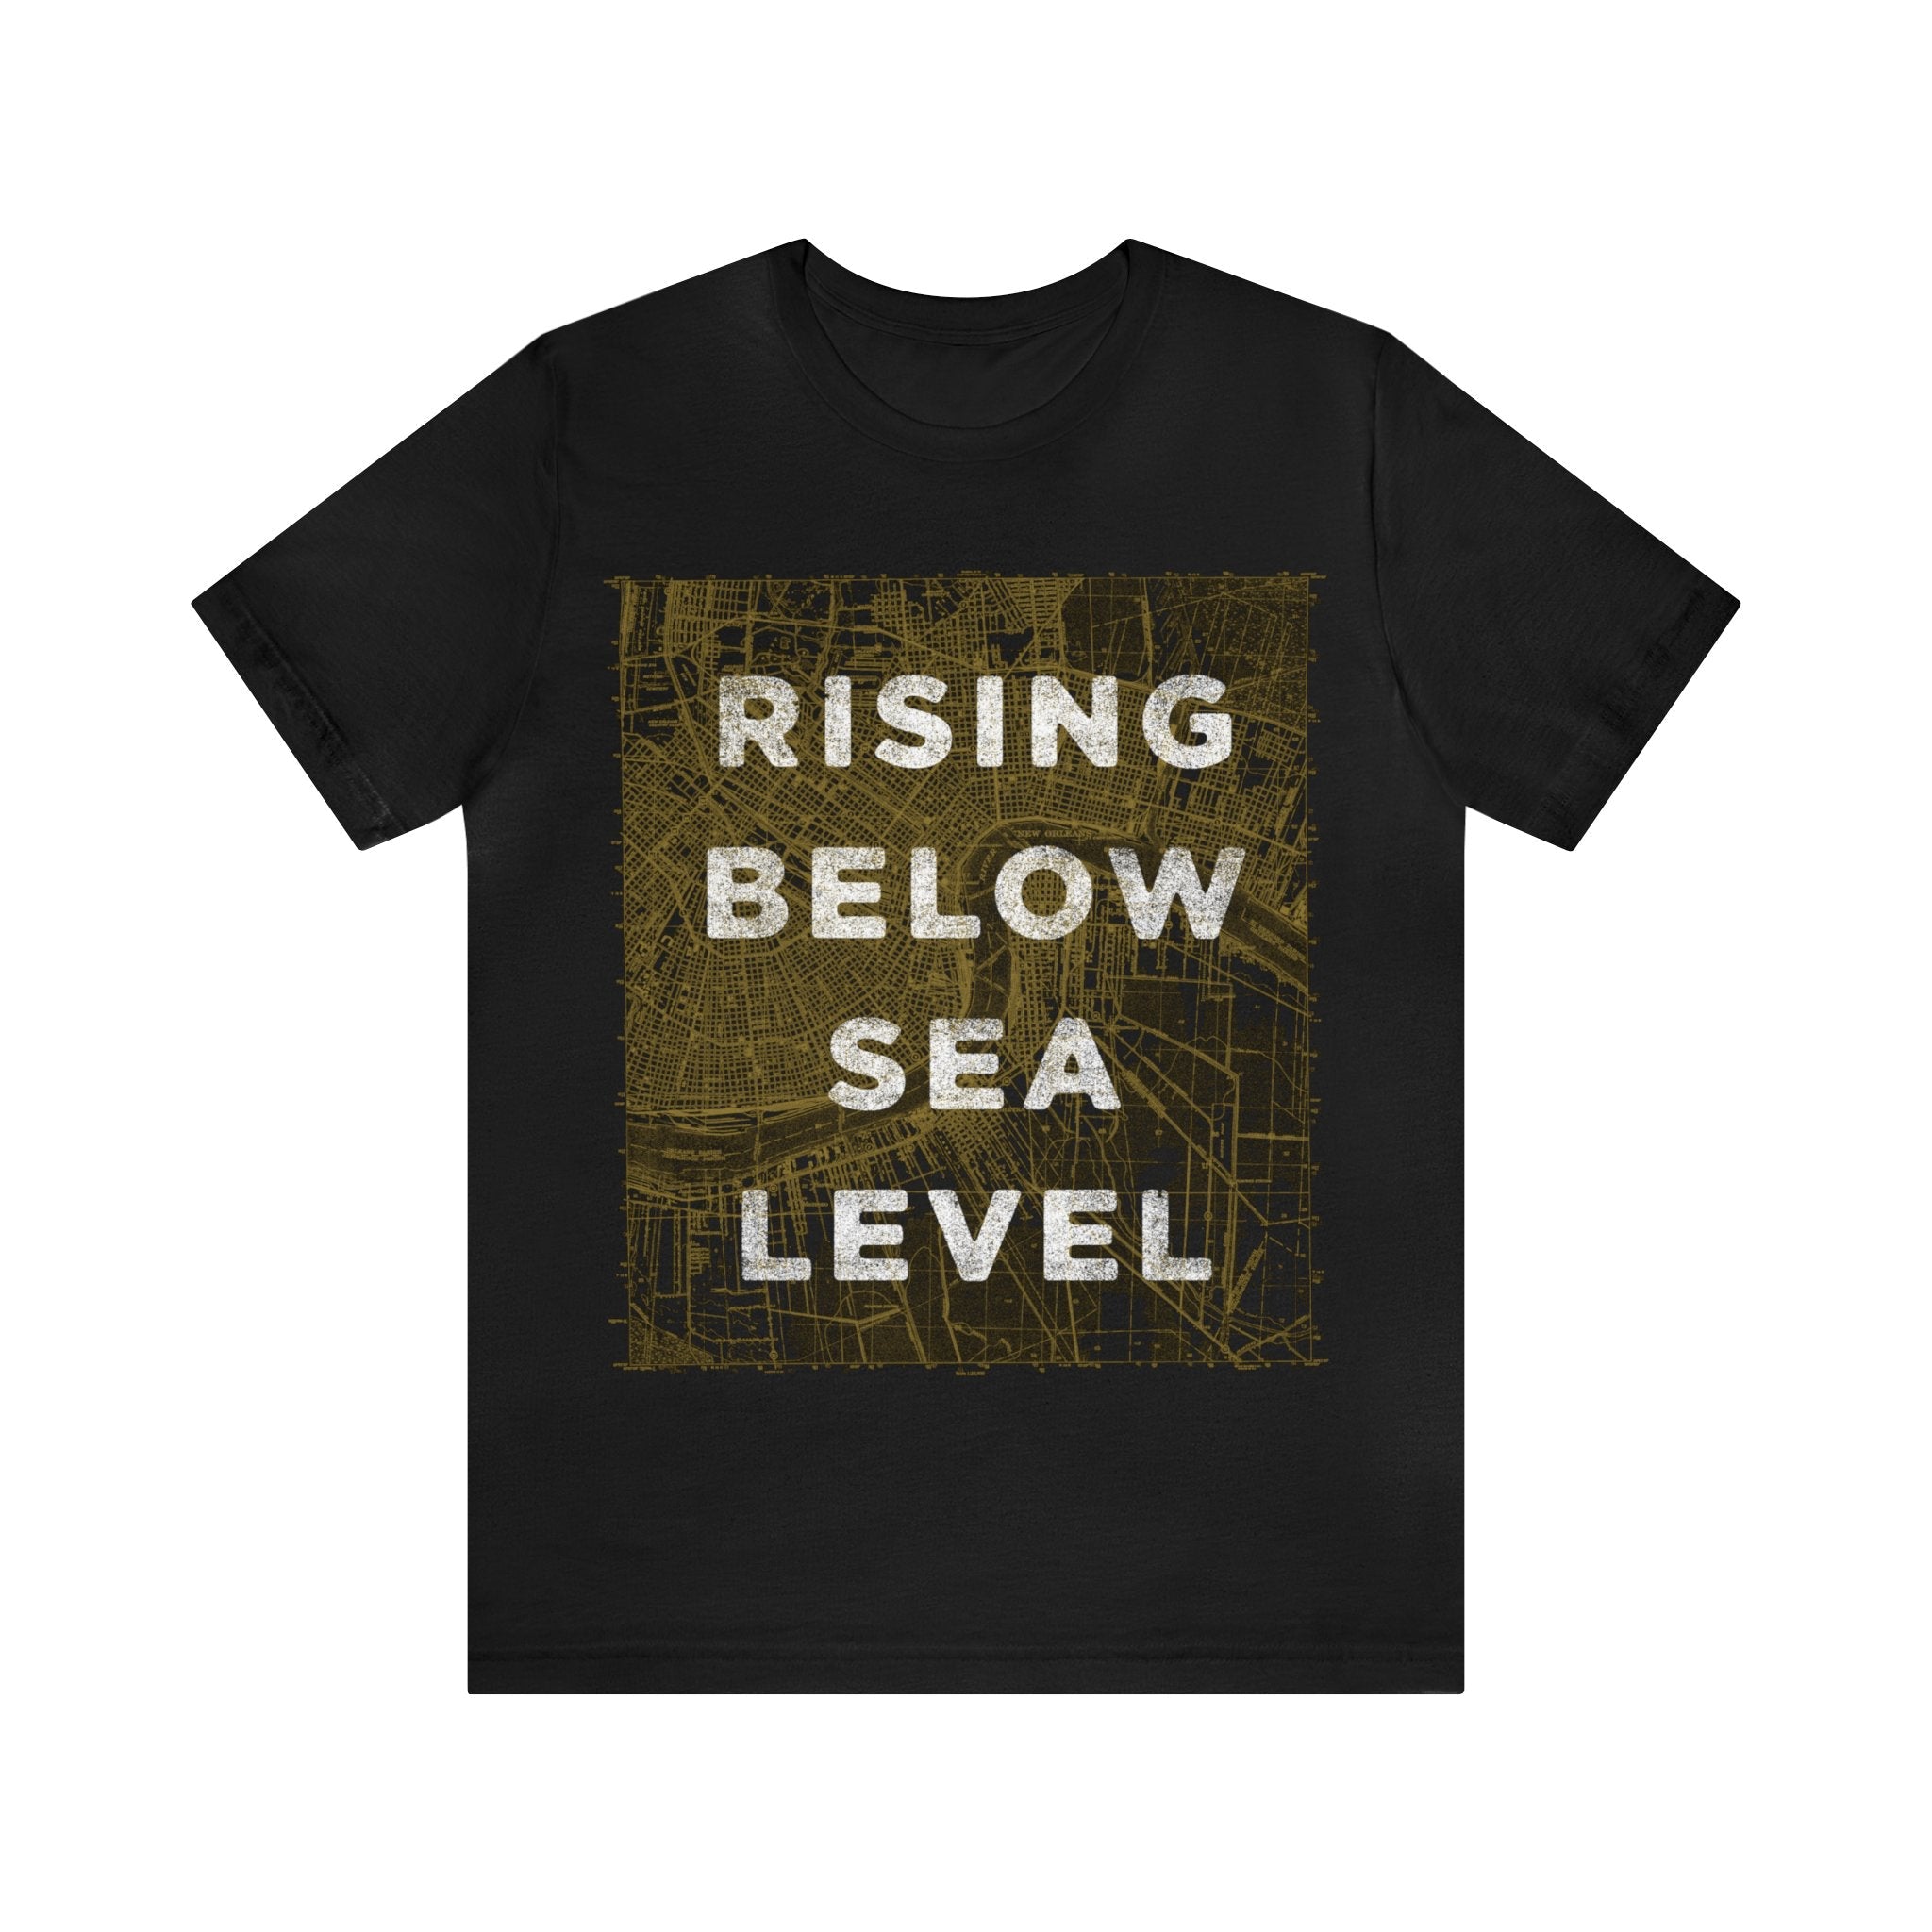 Rising Below Sea Level - Dirty Coast Press